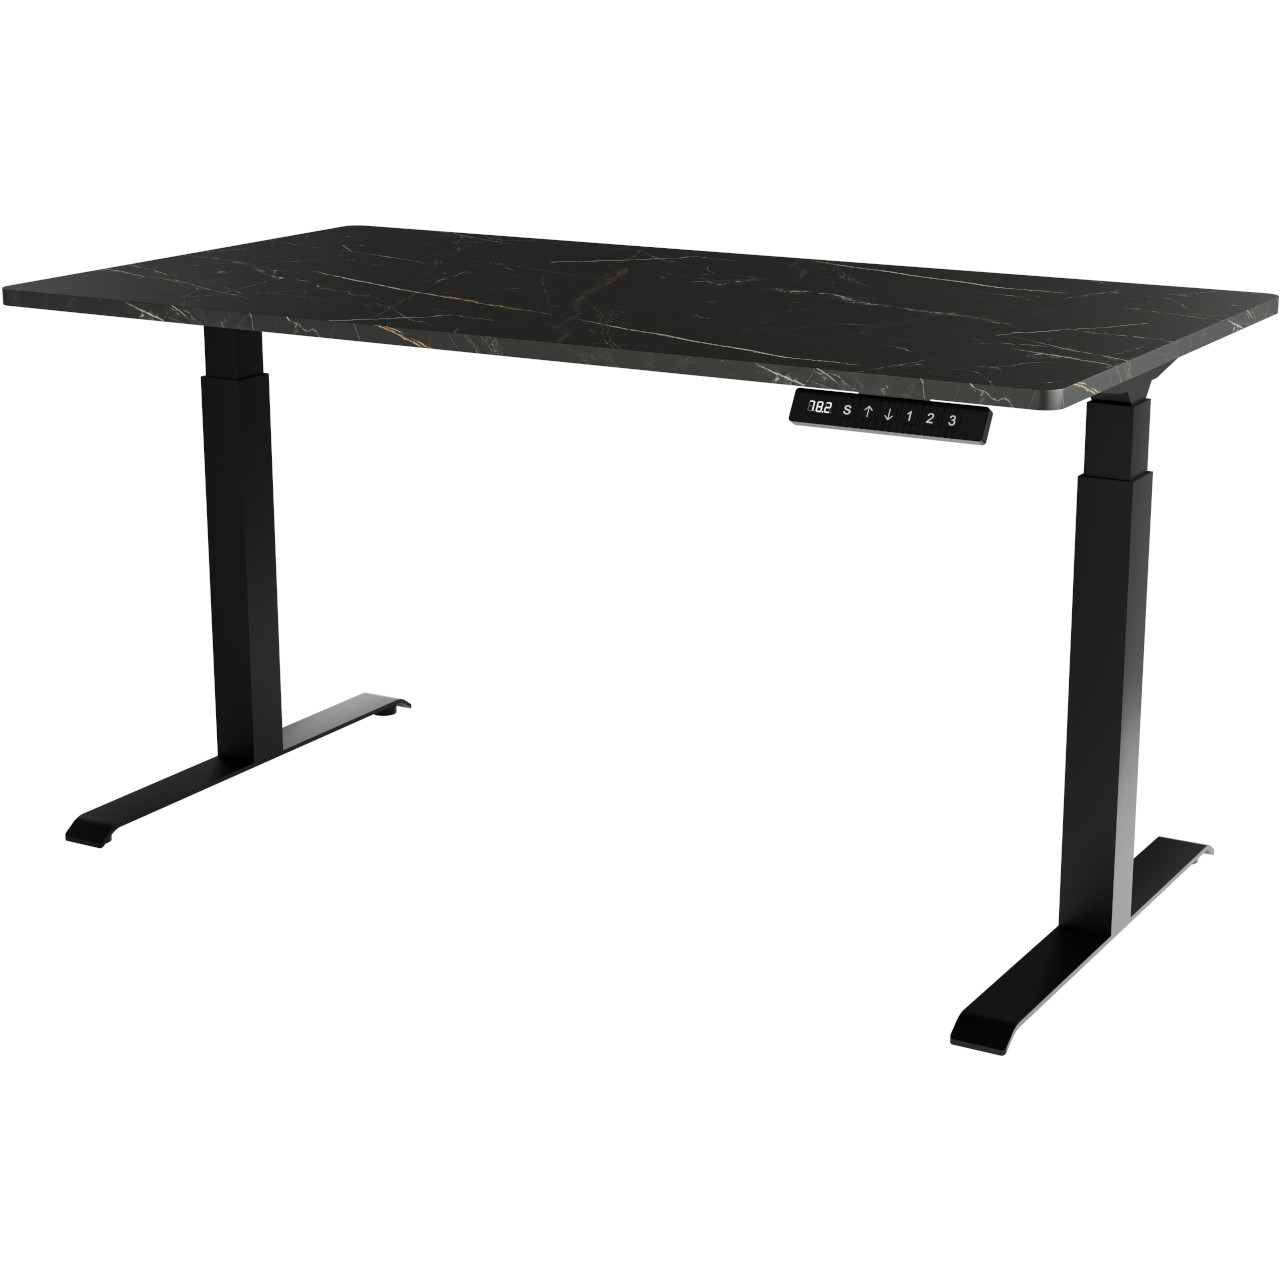 Písací stôl s nastaviteľnou výškou MOON LONG čierny / san sebastian